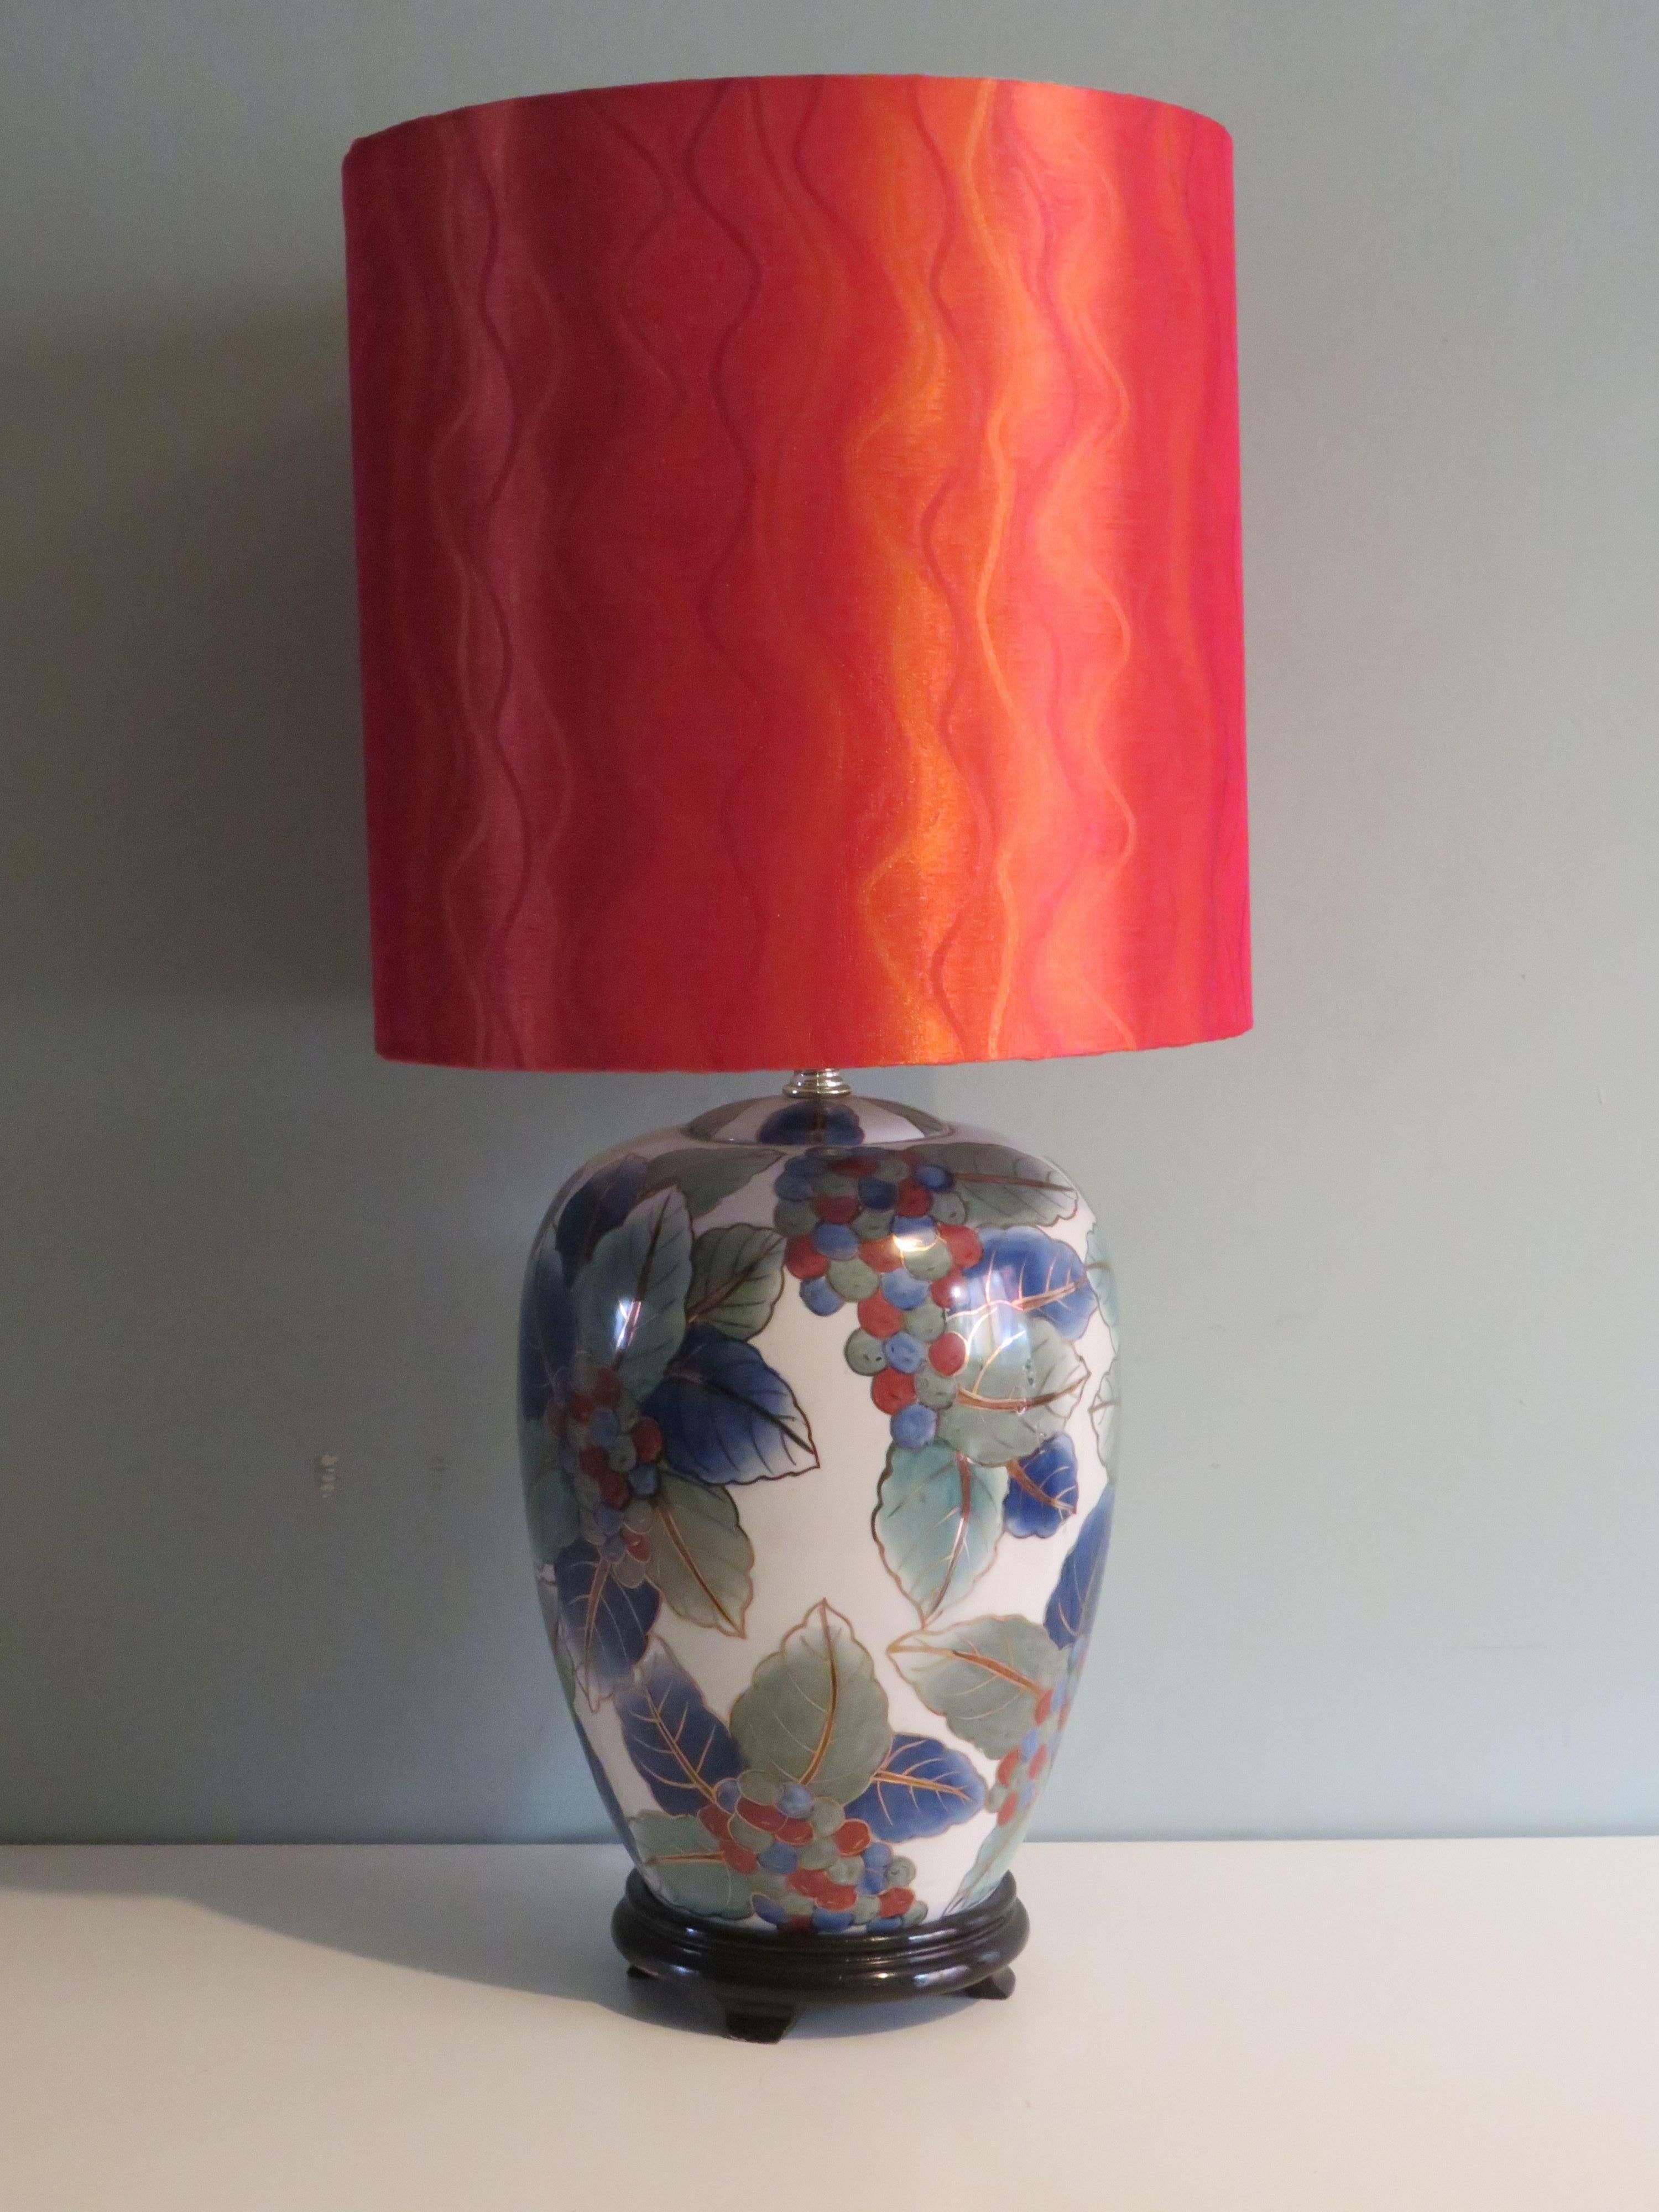 Cette magnifique lampe de table présente un motif de feuilles et de baies dans des tons bleus, verts et brun-orange, terminé par un bord doré sur un fond blanc. La base de la lampe est montée sur un socle en bois noir.
La base de la lampe vintage